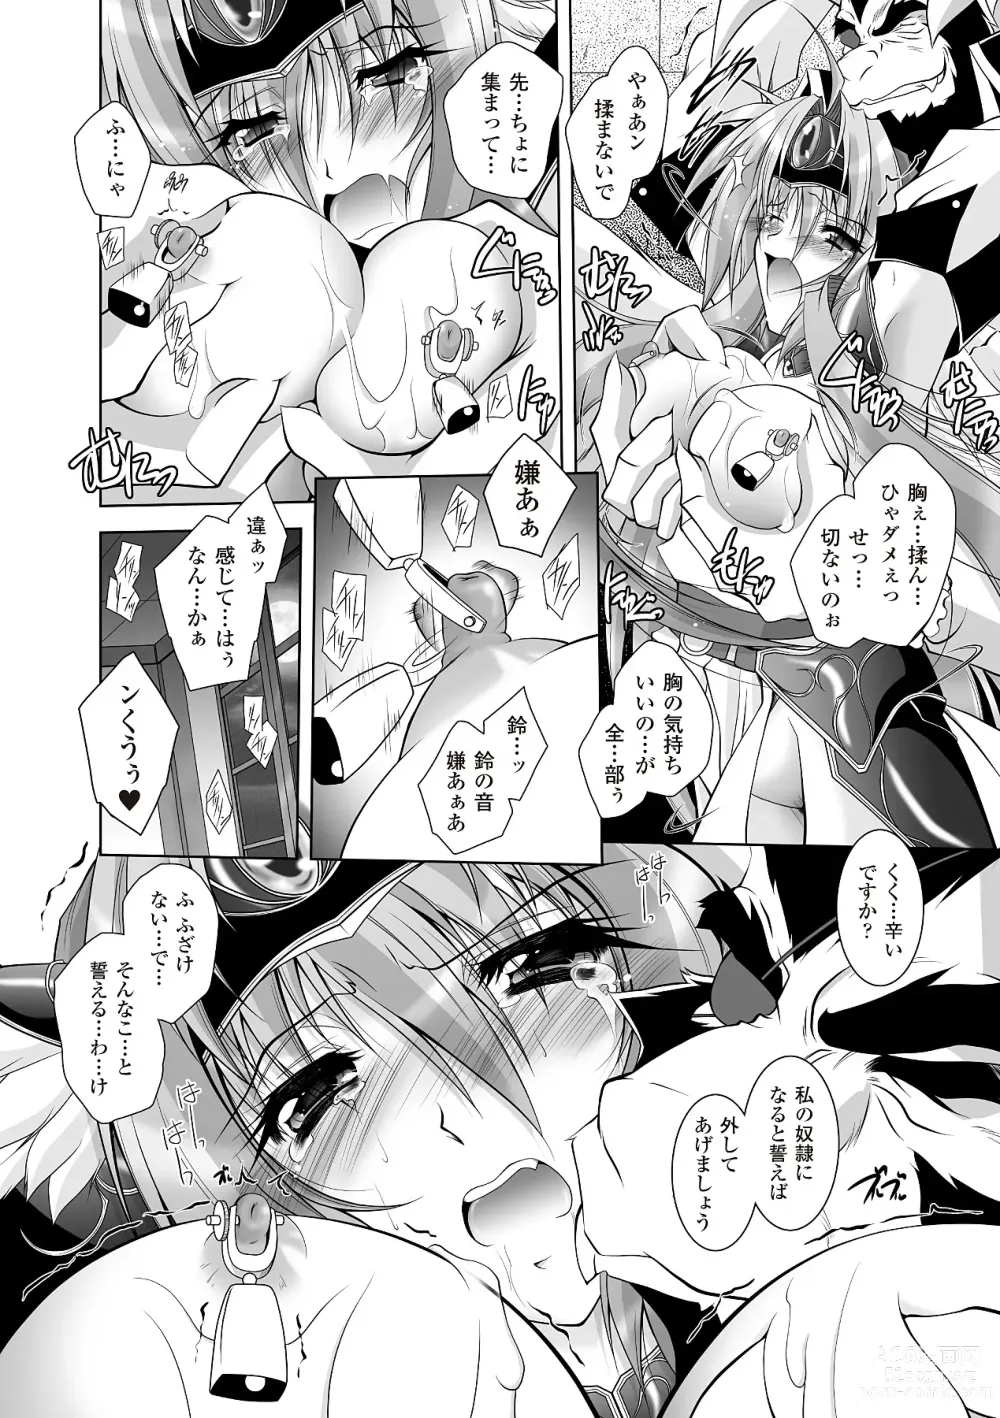 Page 16 of manga Datenshi-tachi no Rhapsody - Fallen Angels Rhapsody